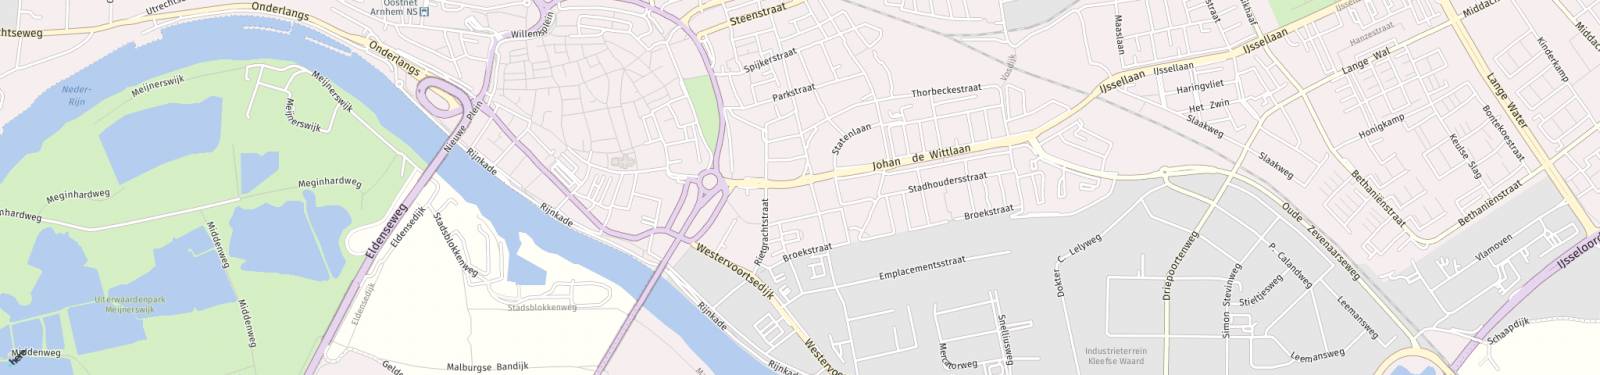 Kaart met locatie Appartement Boulevard Heuvelink